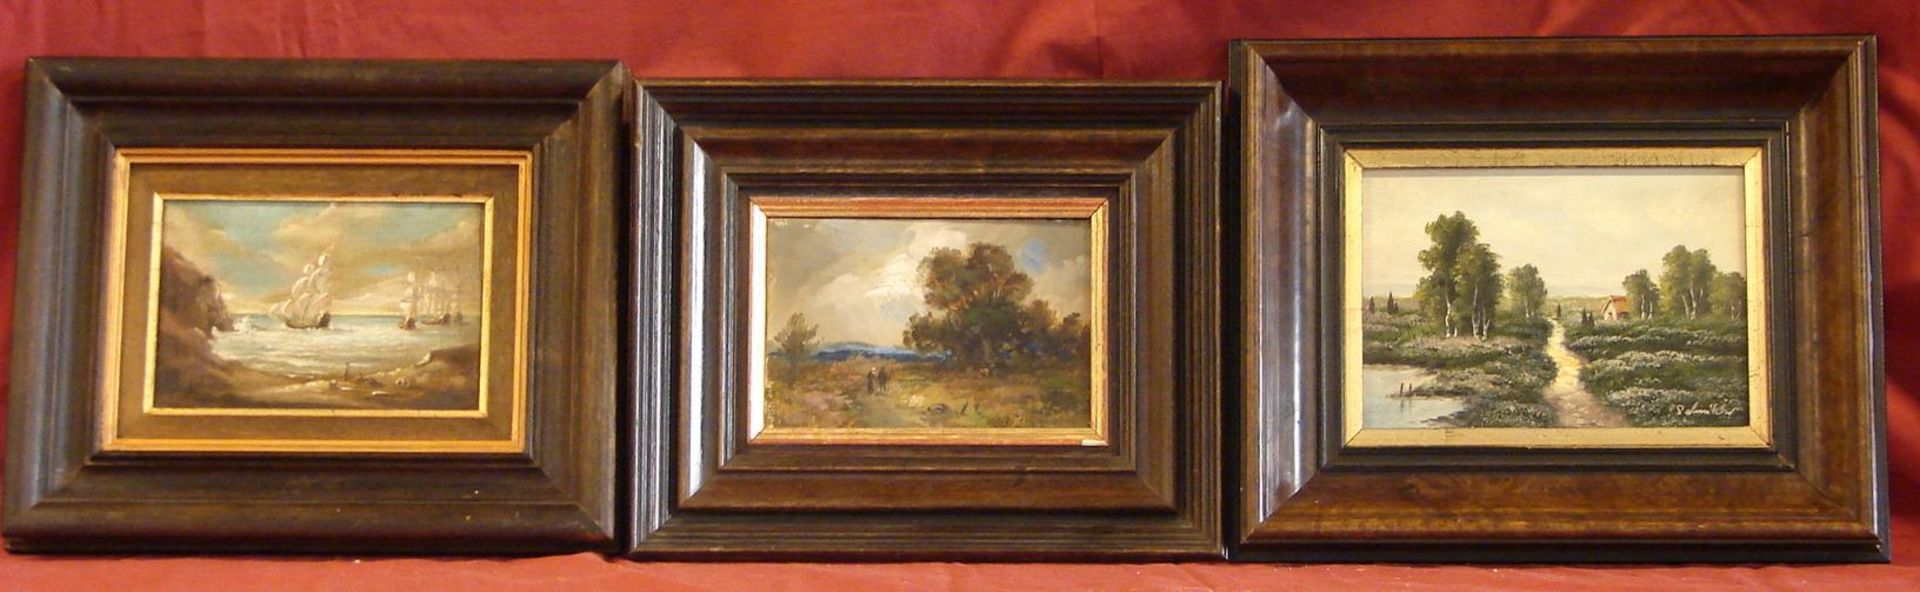 3 Ölgemälde, "Landschaft mit Paar", ohne sig., ca. 10 x 14,5 cm; "Landschaft mit Haus", u.re.sig.